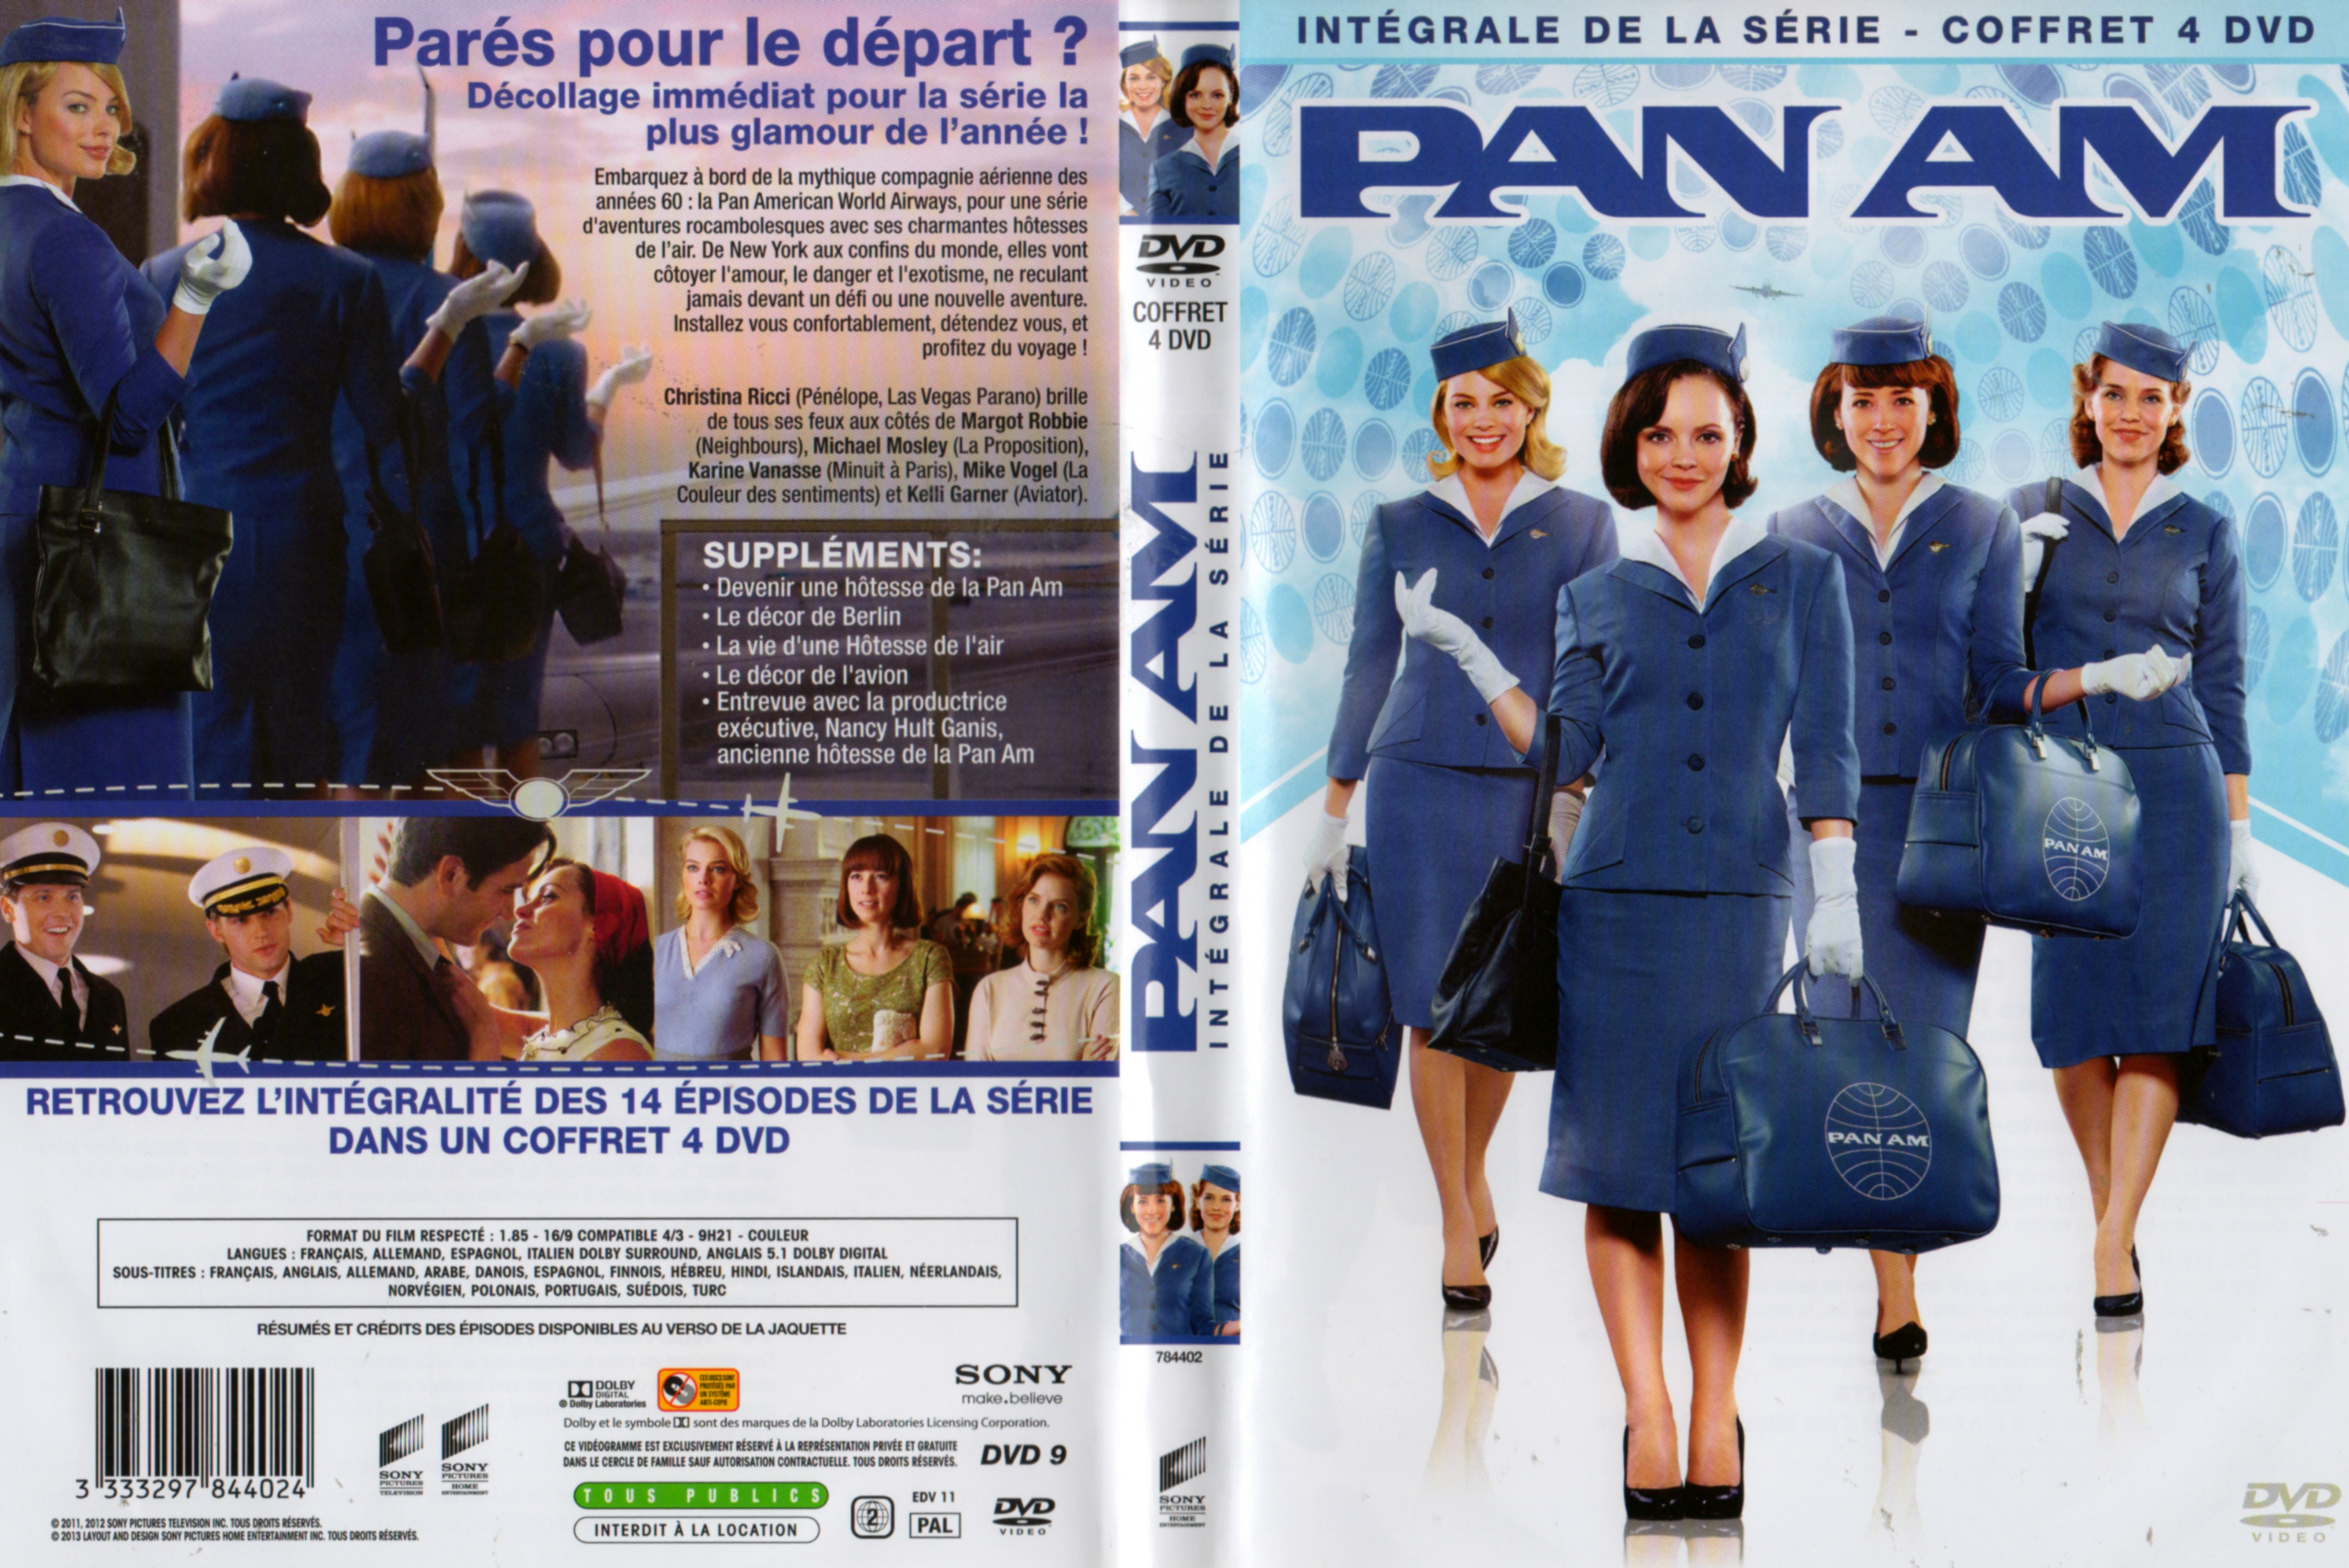 Jaquette DVD Pan am (intgrale)